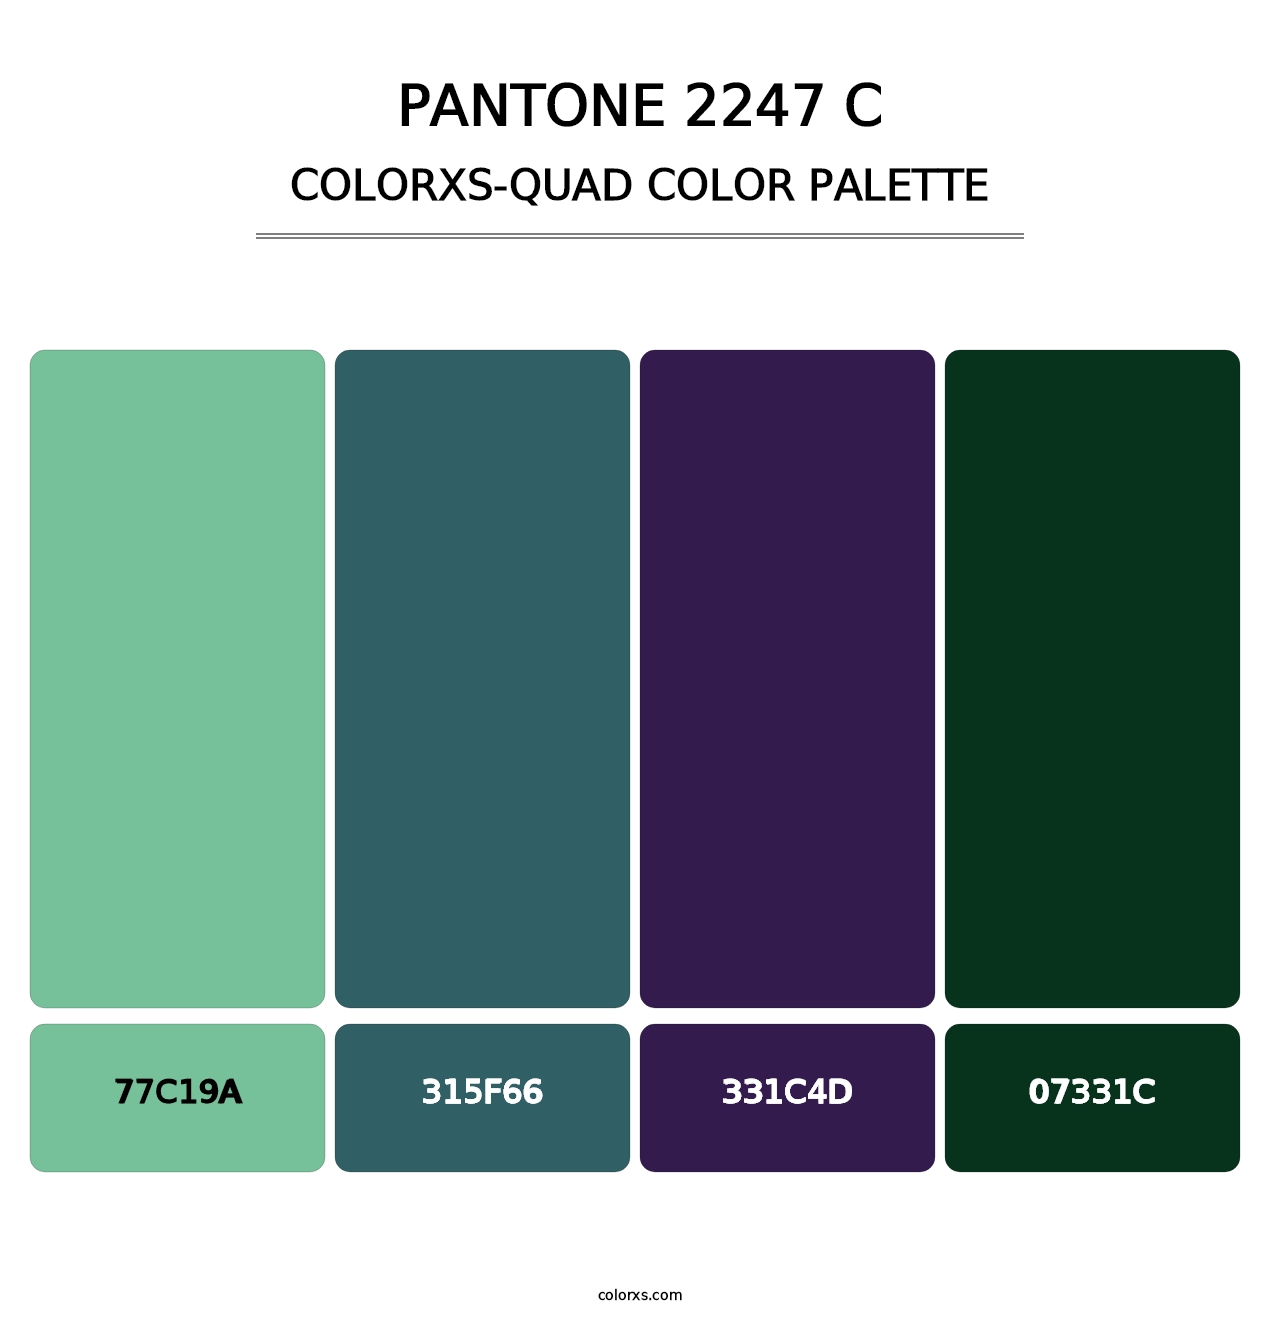 PANTONE 2247 C - Colorxs Quad Palette